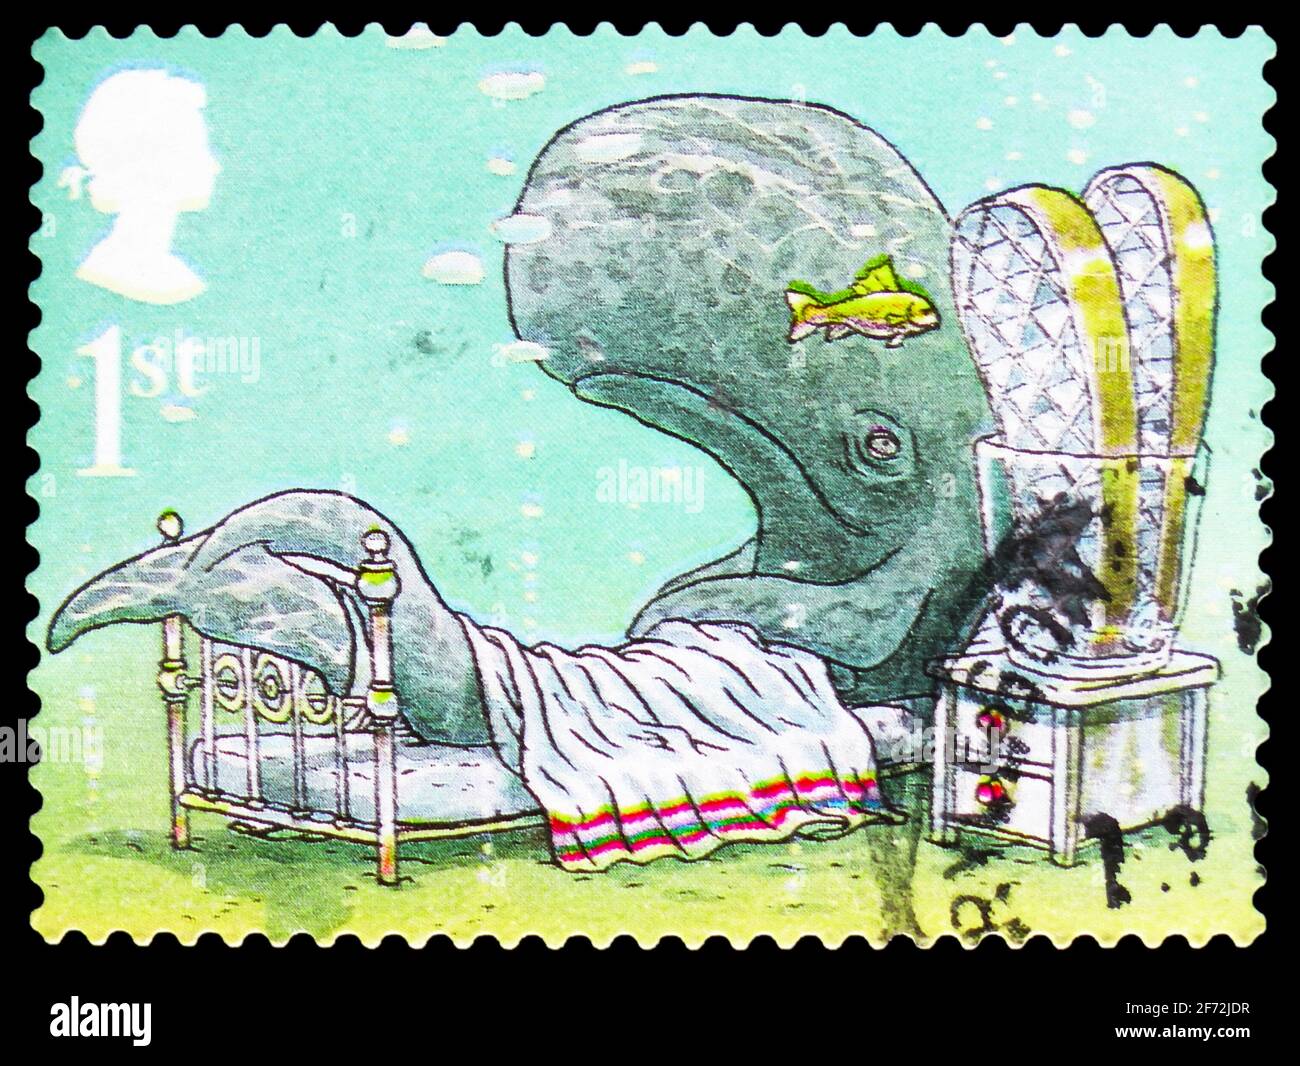 MOSCOU, RUSSIE - 22 DÉCEMBRE 2020: Timbre-poste imprimé au Royaume-Uni montre "Comment la baleine a eu sa gorge", auteurs - Rudyard Kipling série, cir Banque D'Images